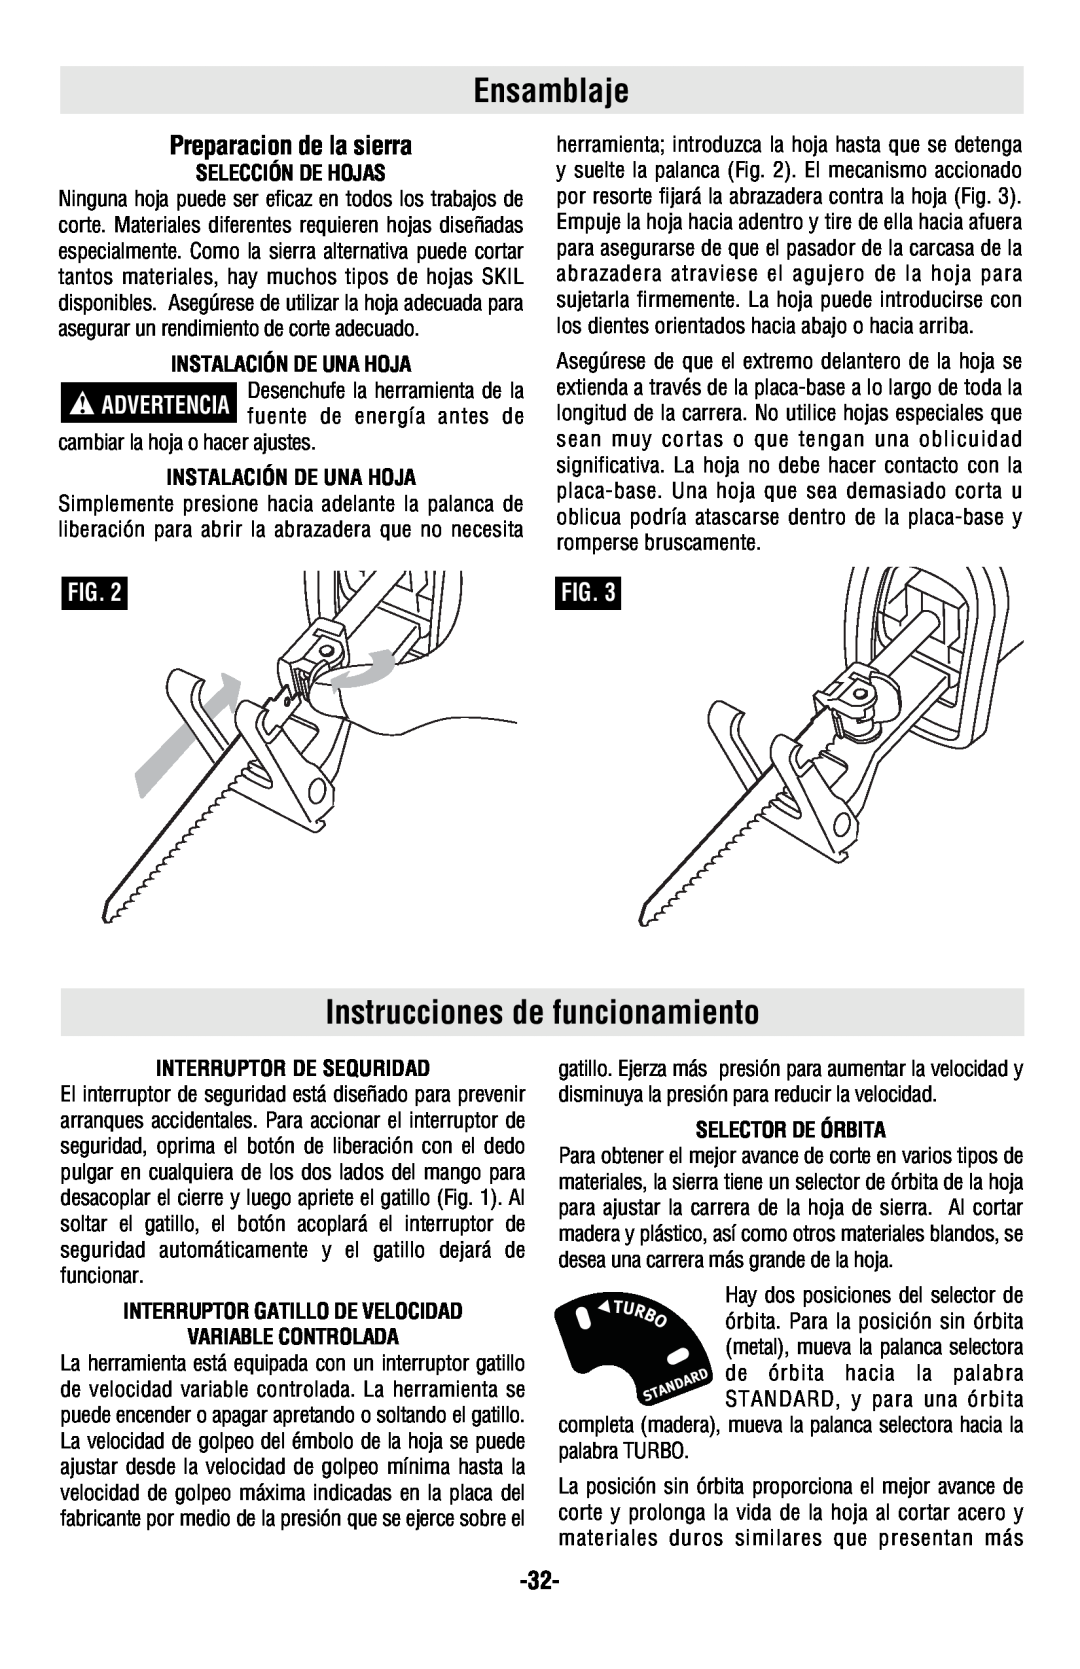 Skil 9350 manual Ensamblaje, Instrucciones de funcionamiento, Preparacion de la sierra 